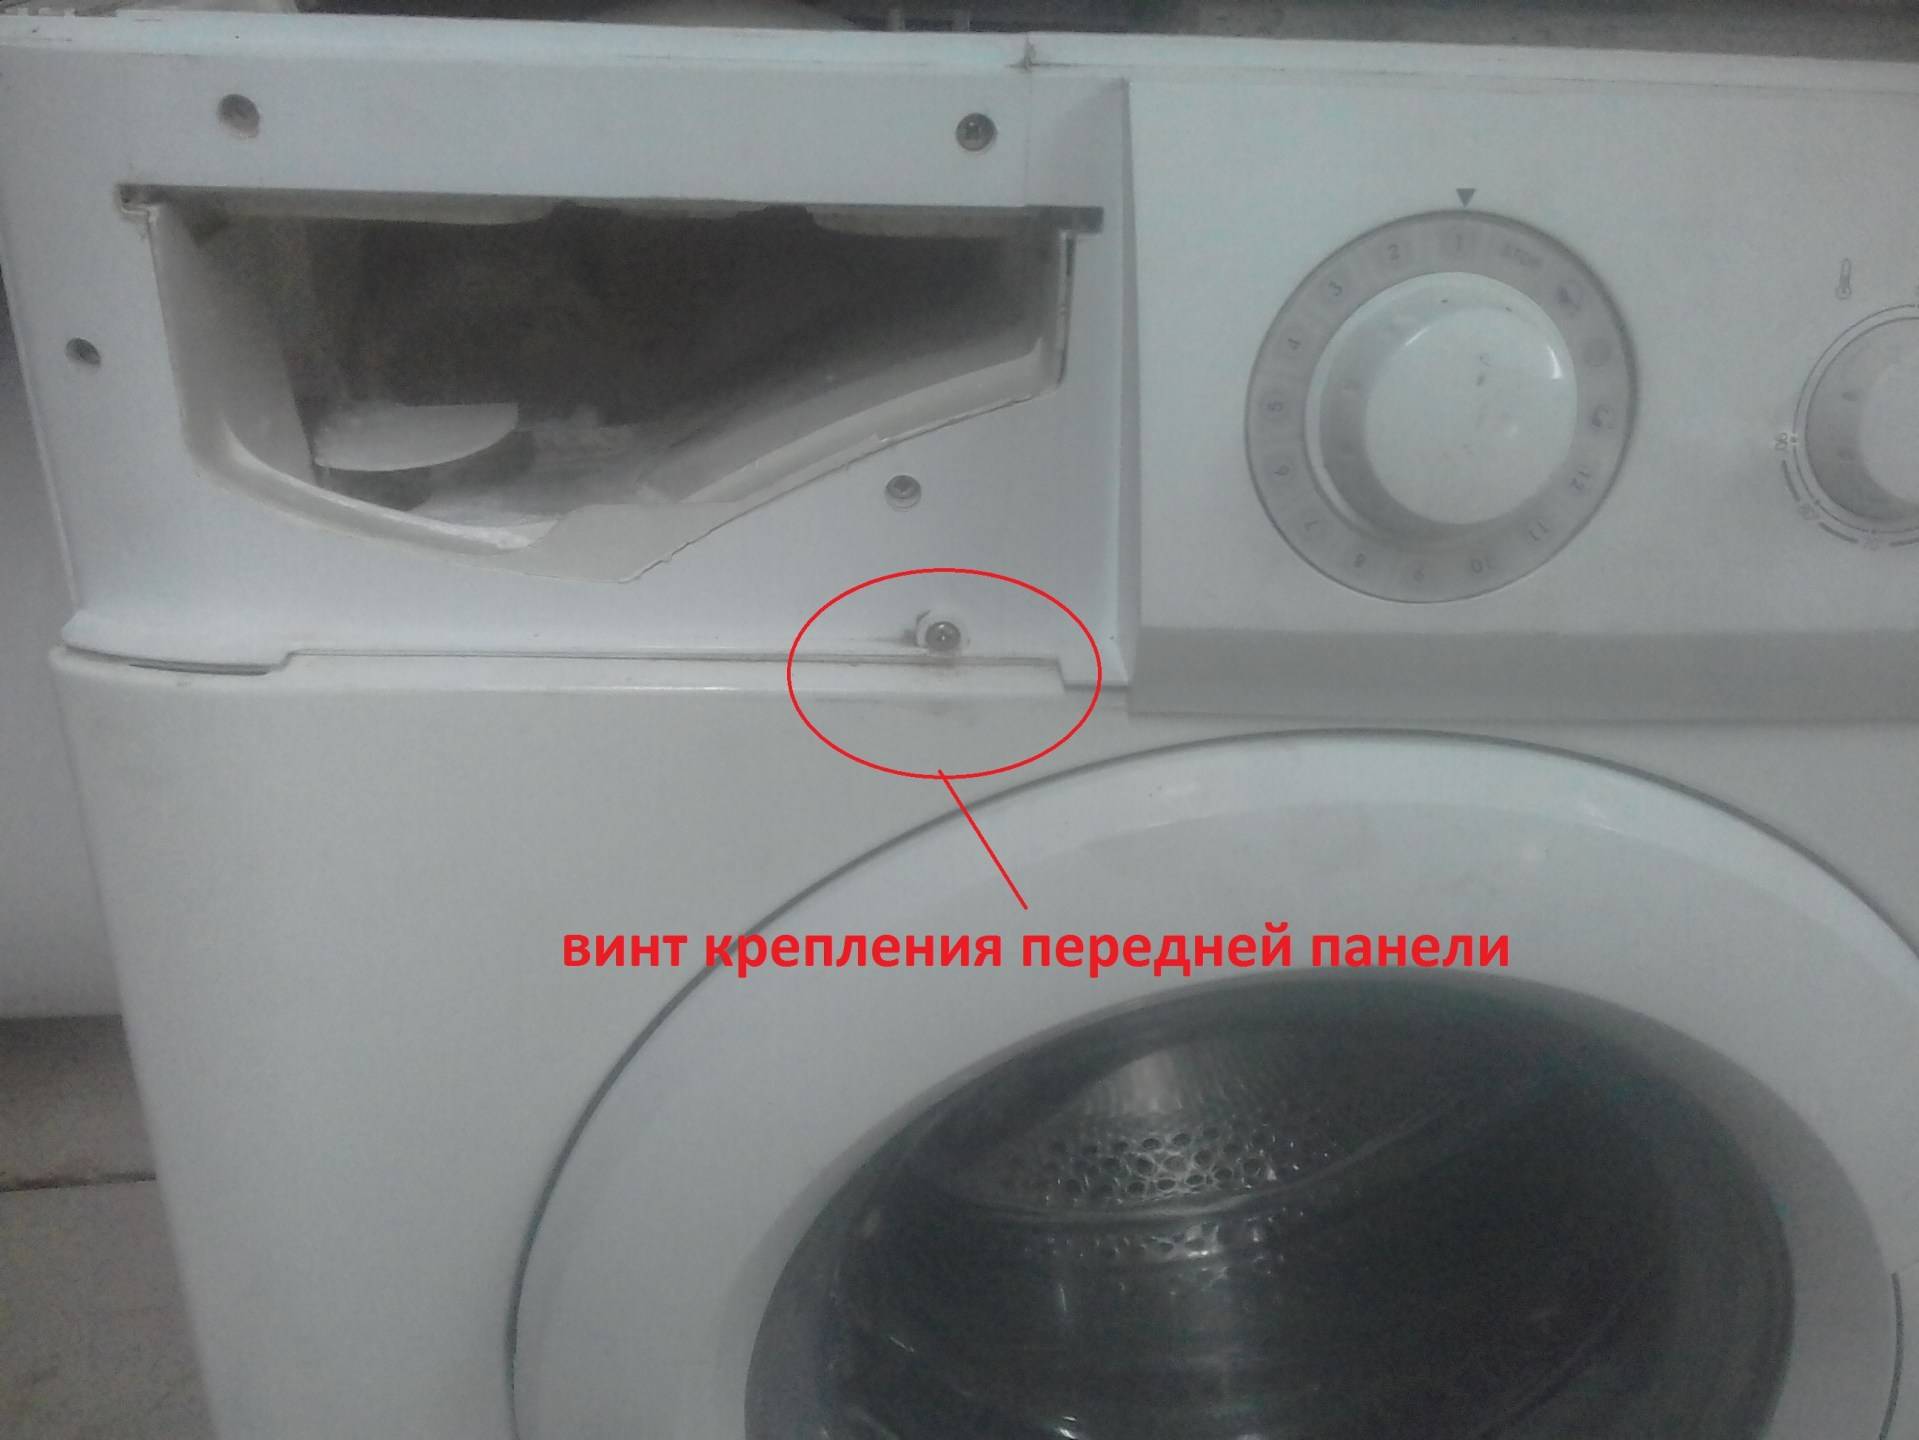 Неисправности стиральной машины вестел